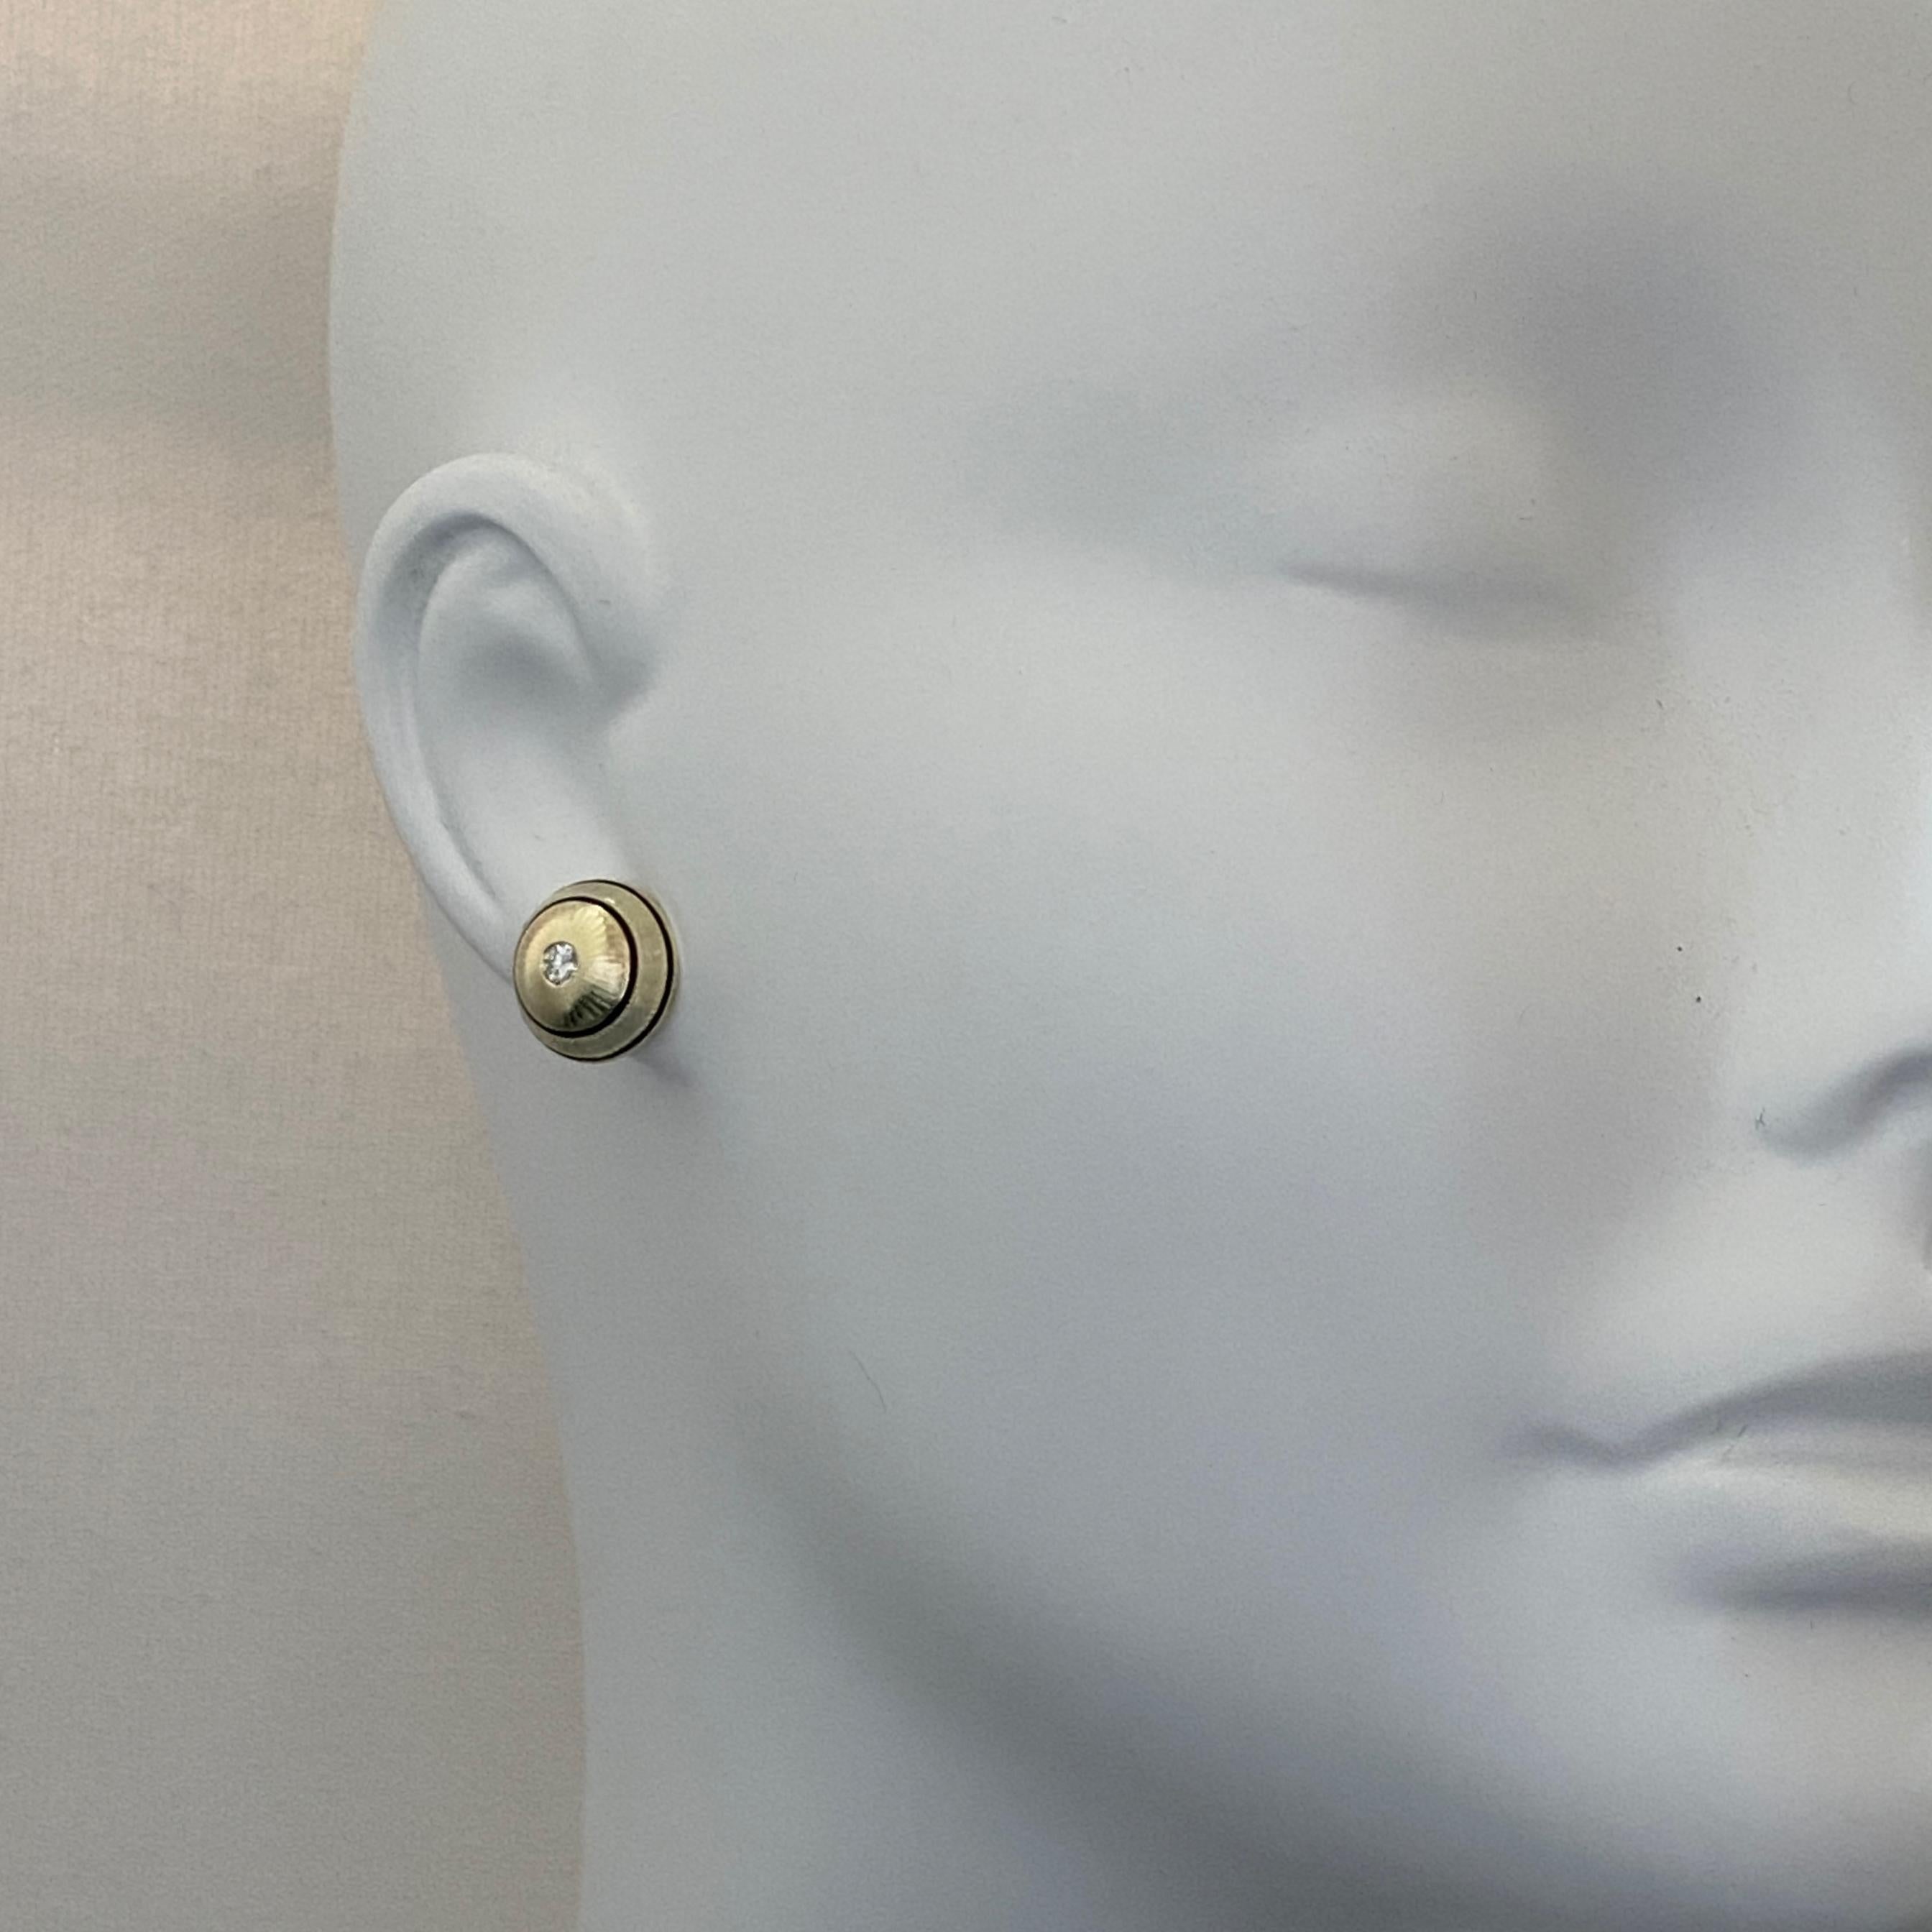 convert cufflinks to earrings